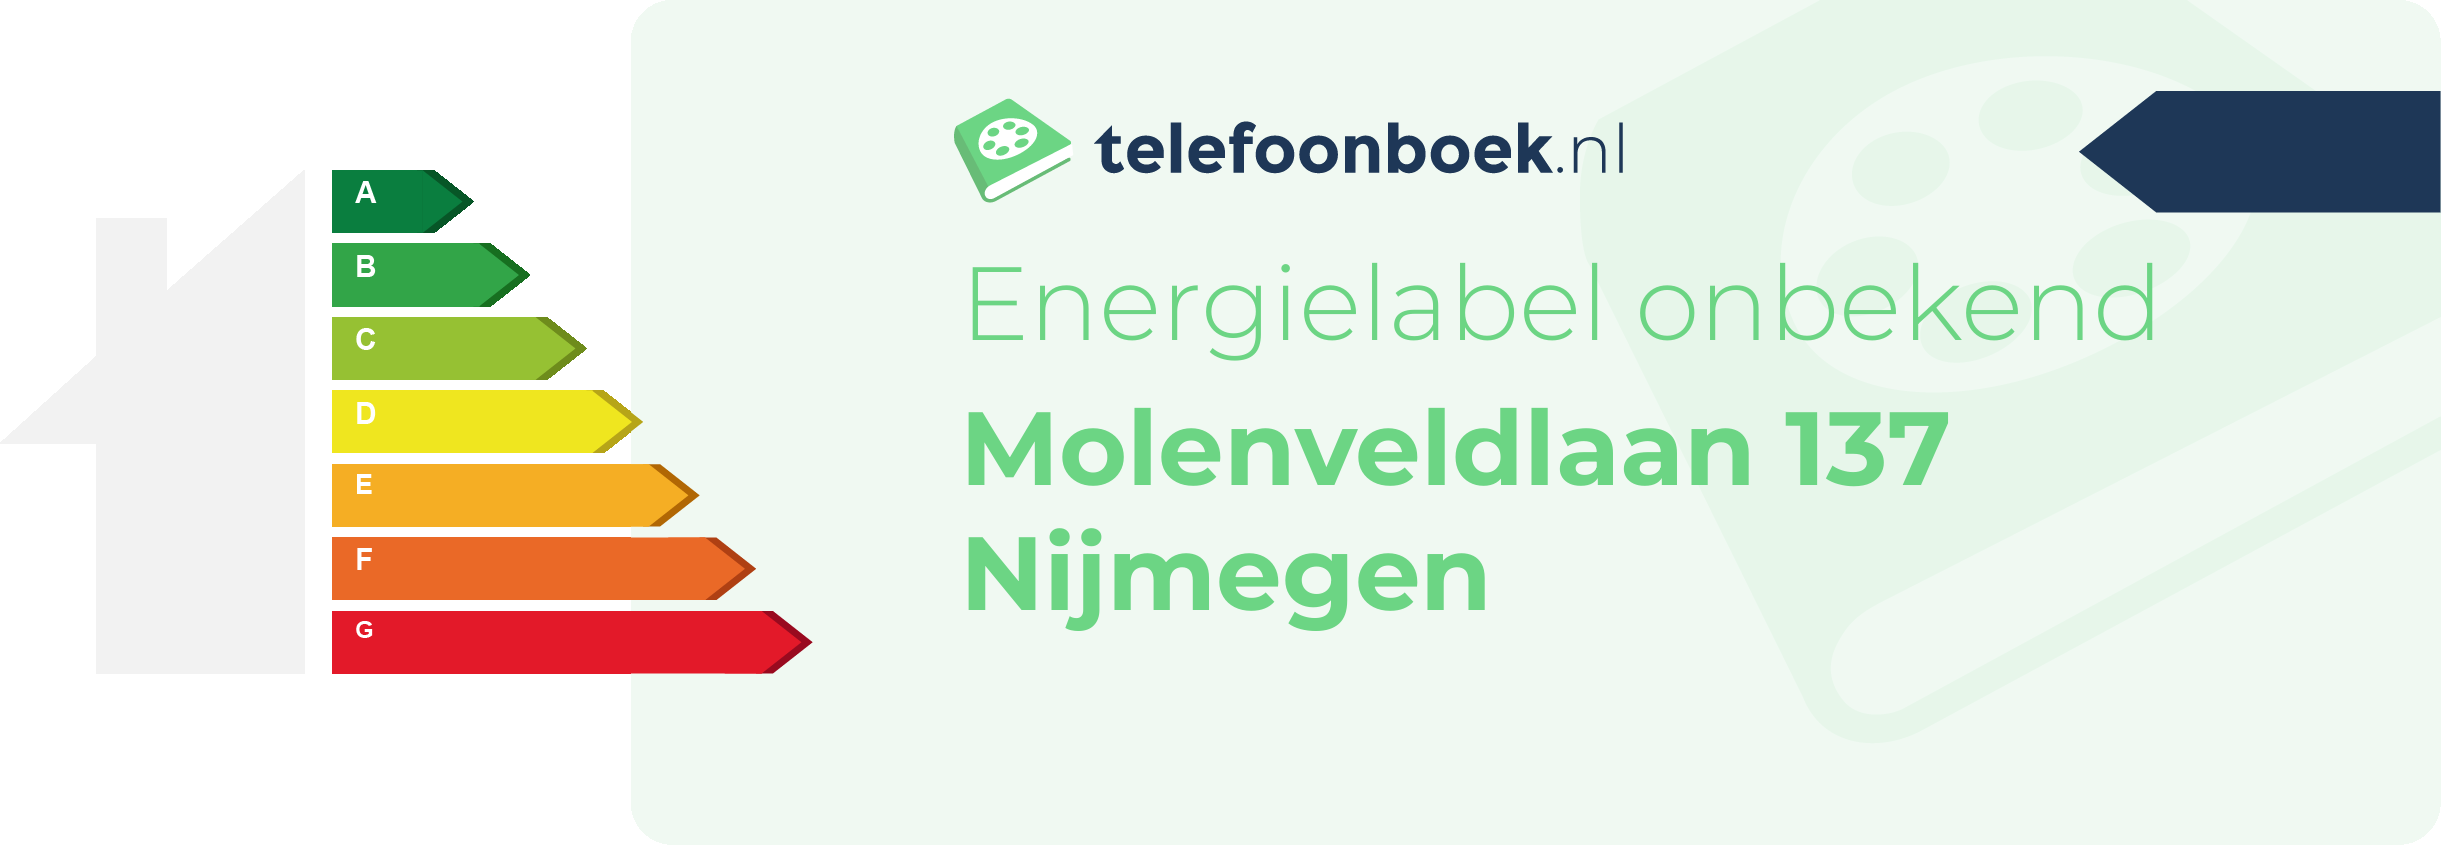 Energielabel Molenveldlaan 137 Nijmegen